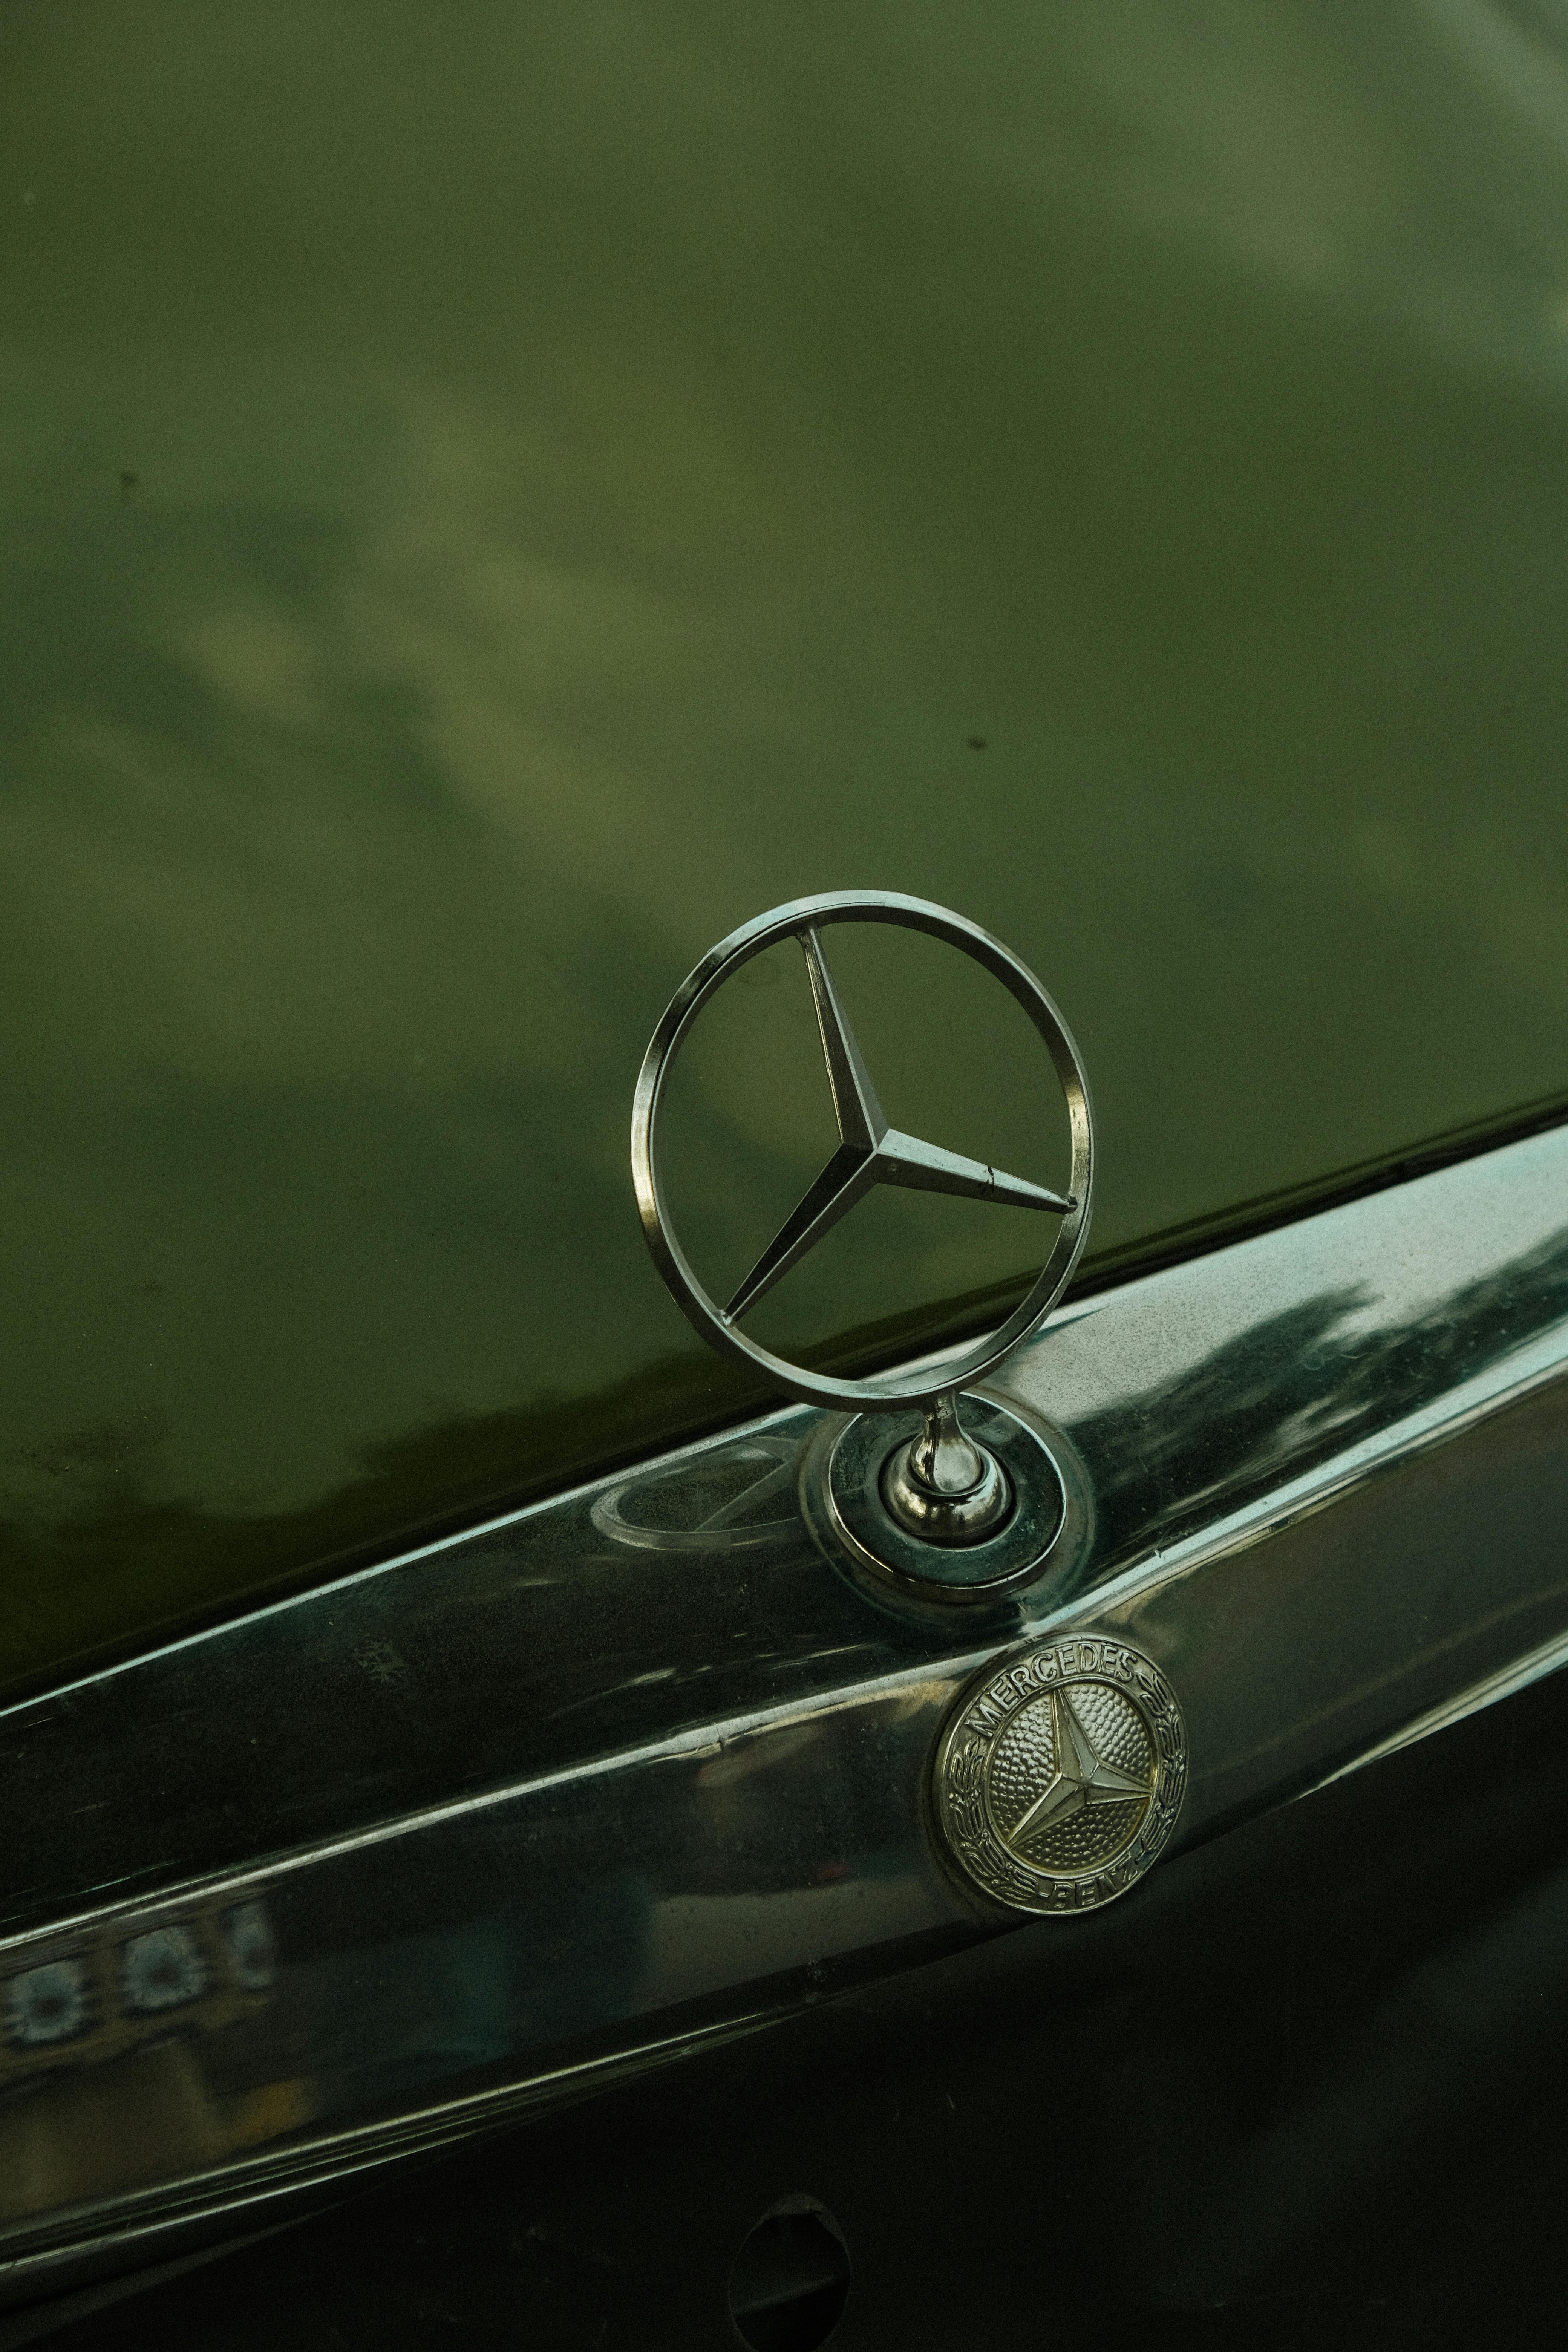 Mercedes Logo Car – Stock Editorial Photo © artographer #443441296